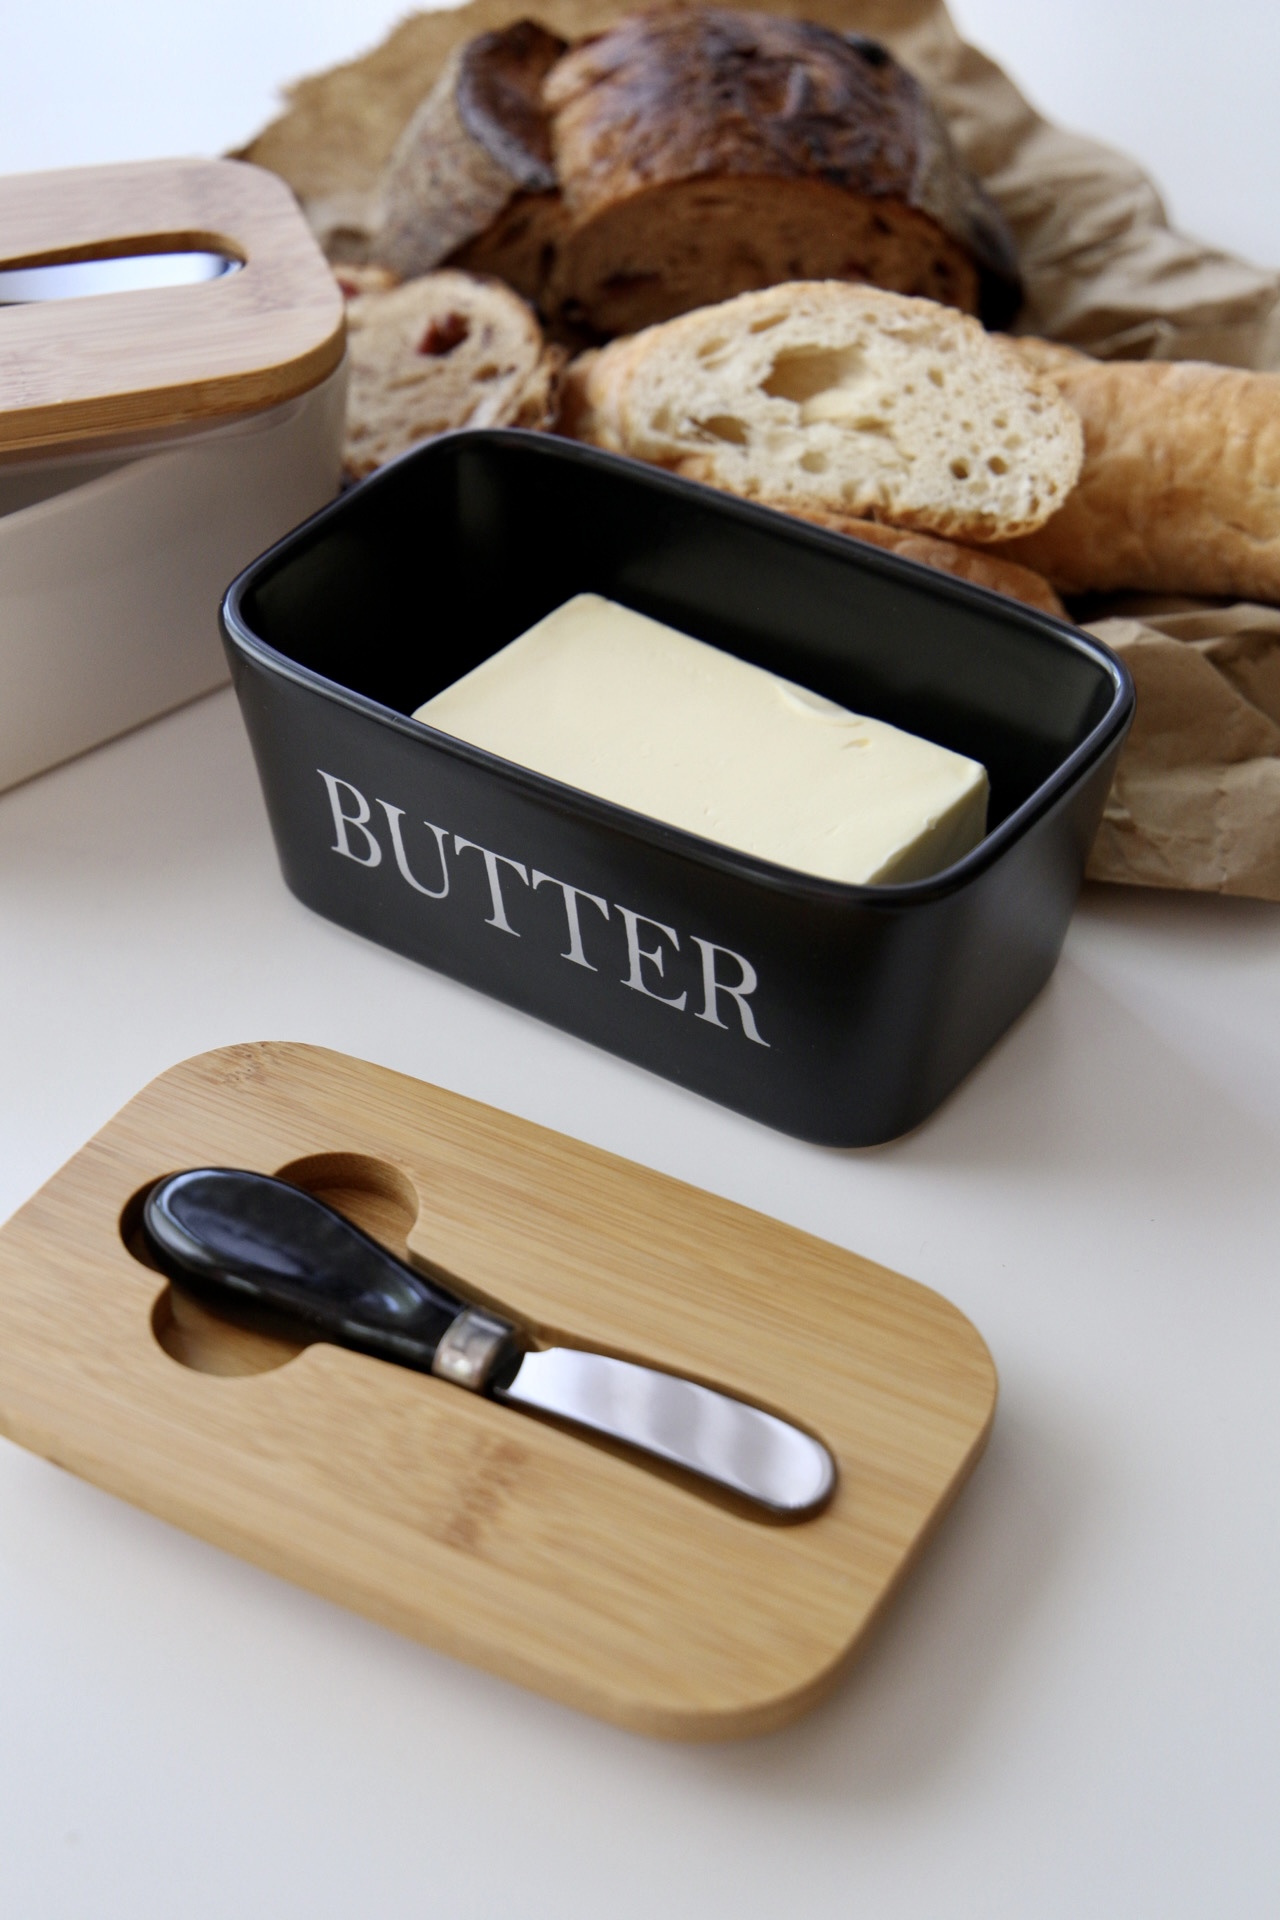 картинка Масленка керамическая Butter от магазина Pratik